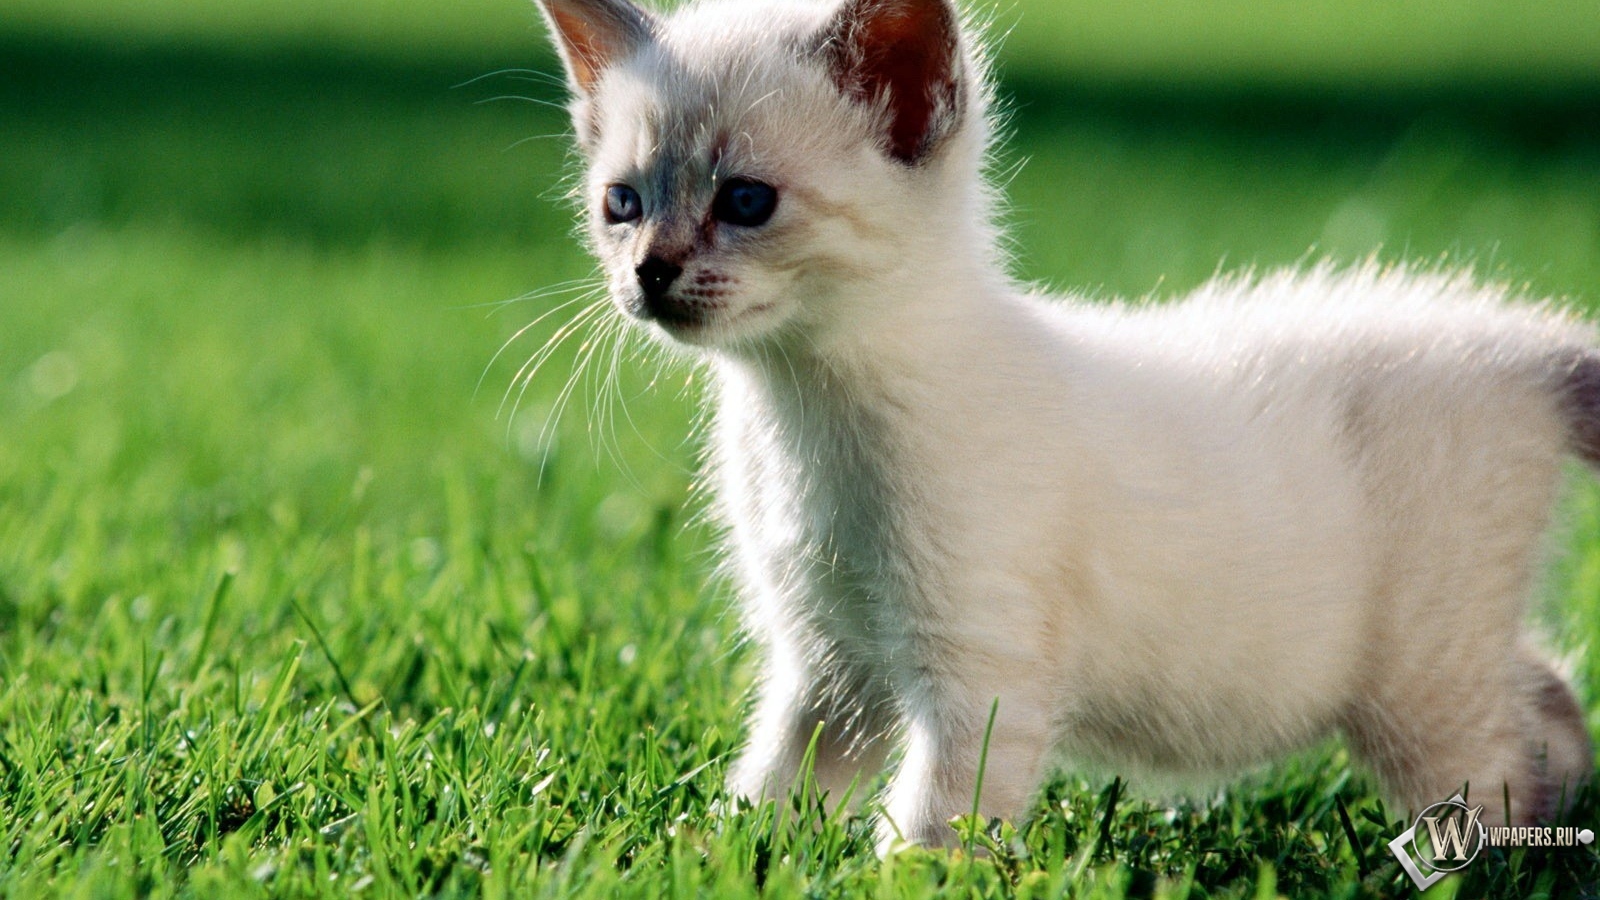 Котёнок на траве 1600x900